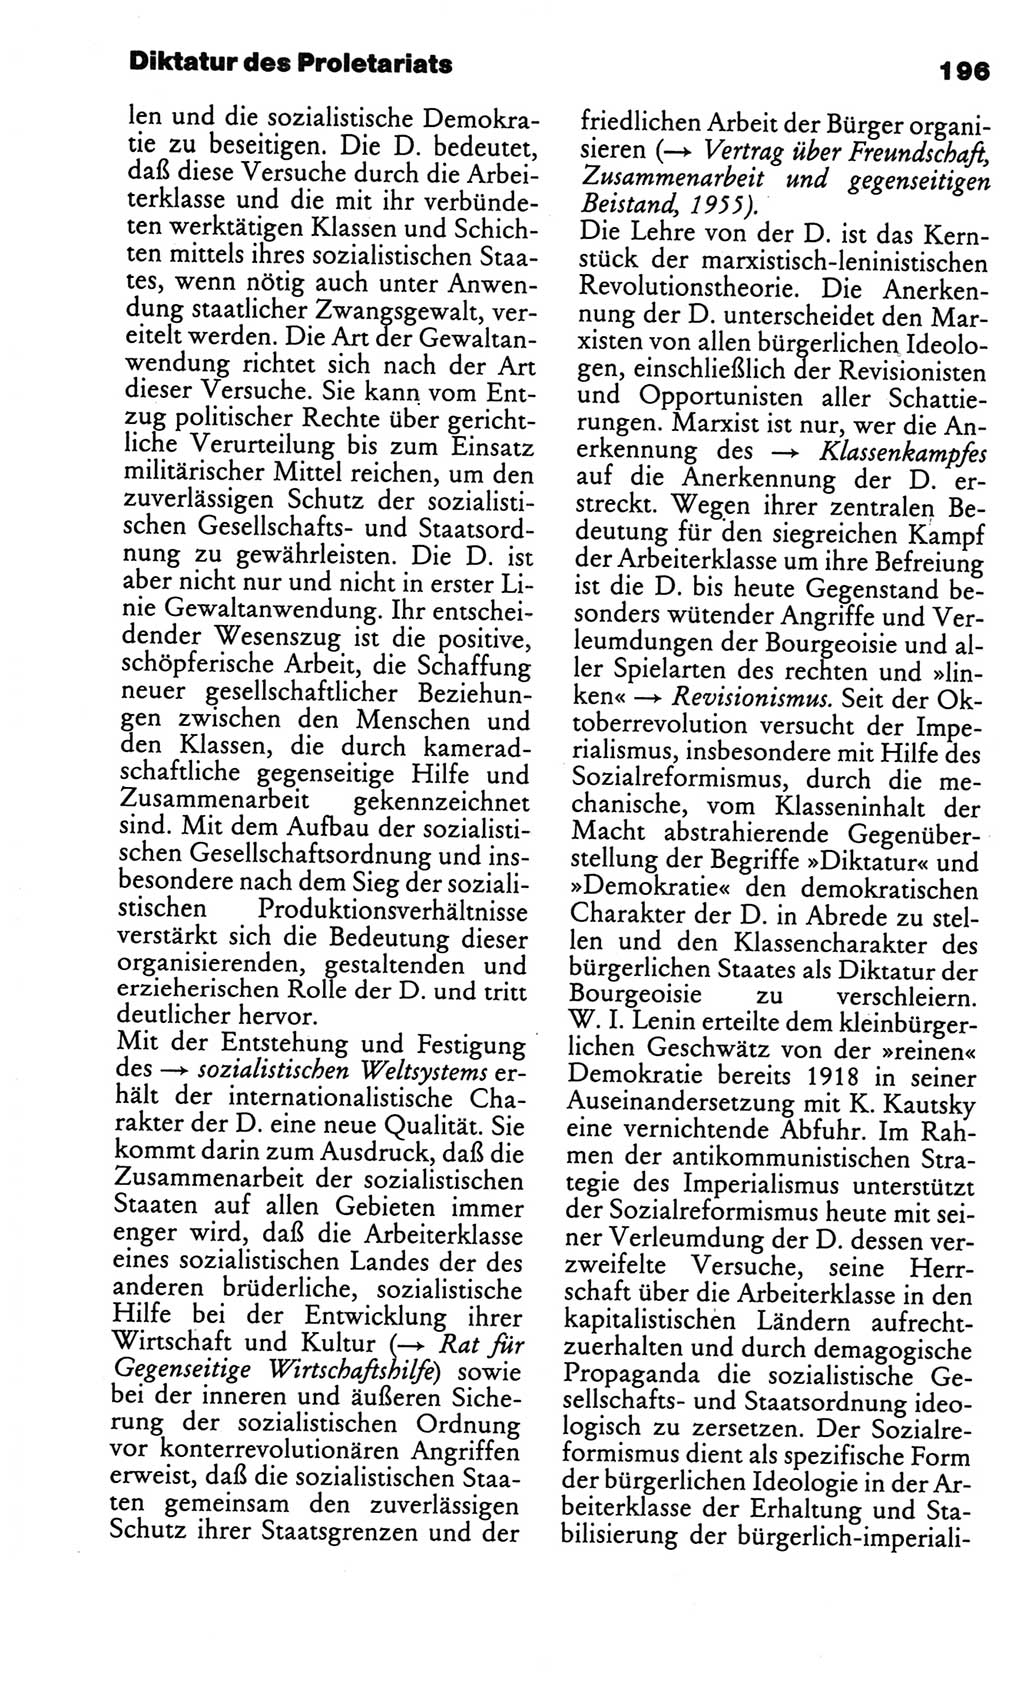 Kleines politisches Wörterbuch [Deutsche Demokratische Republik (DDR)] 1986, Seite 196 (Kl. pol. Wb. DDR 1986, S. 196)